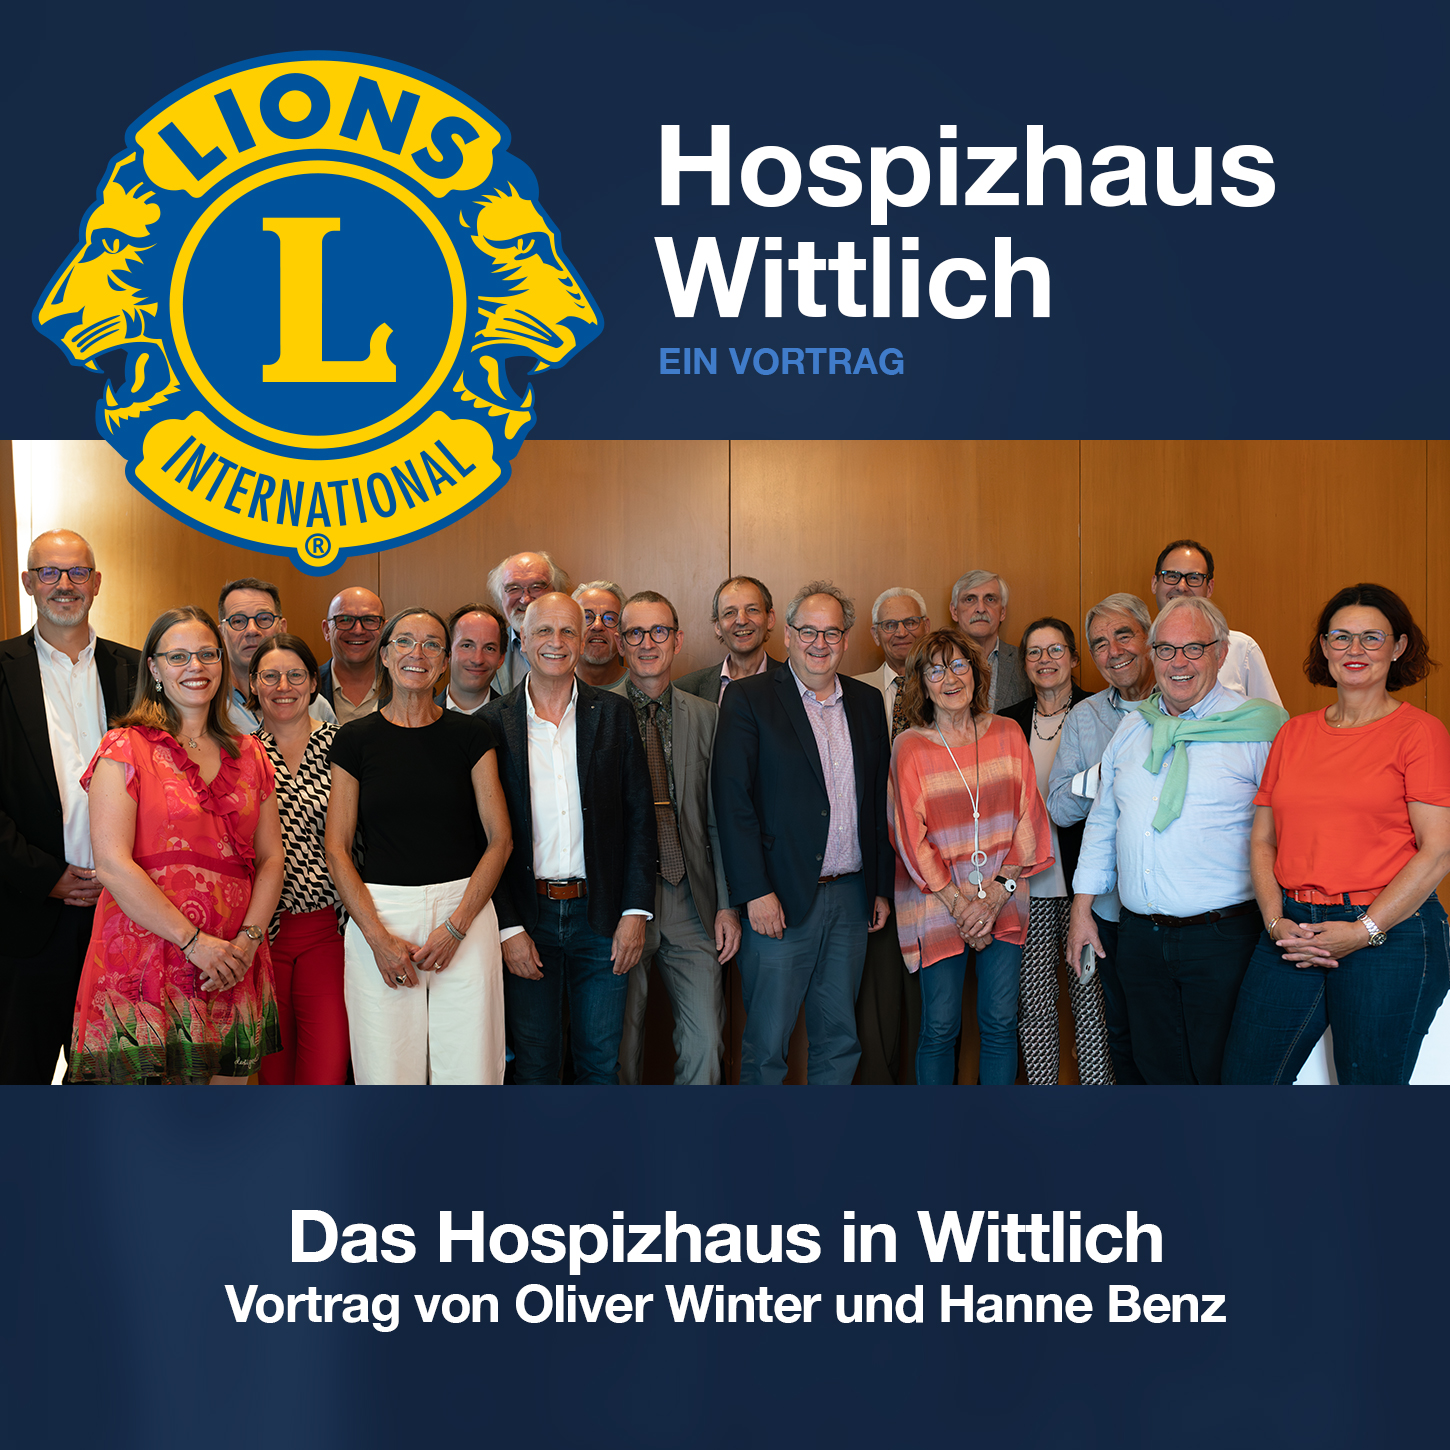 Hospizhaus Wittlich - Ein Vortrag beim Lions Club Wittlich